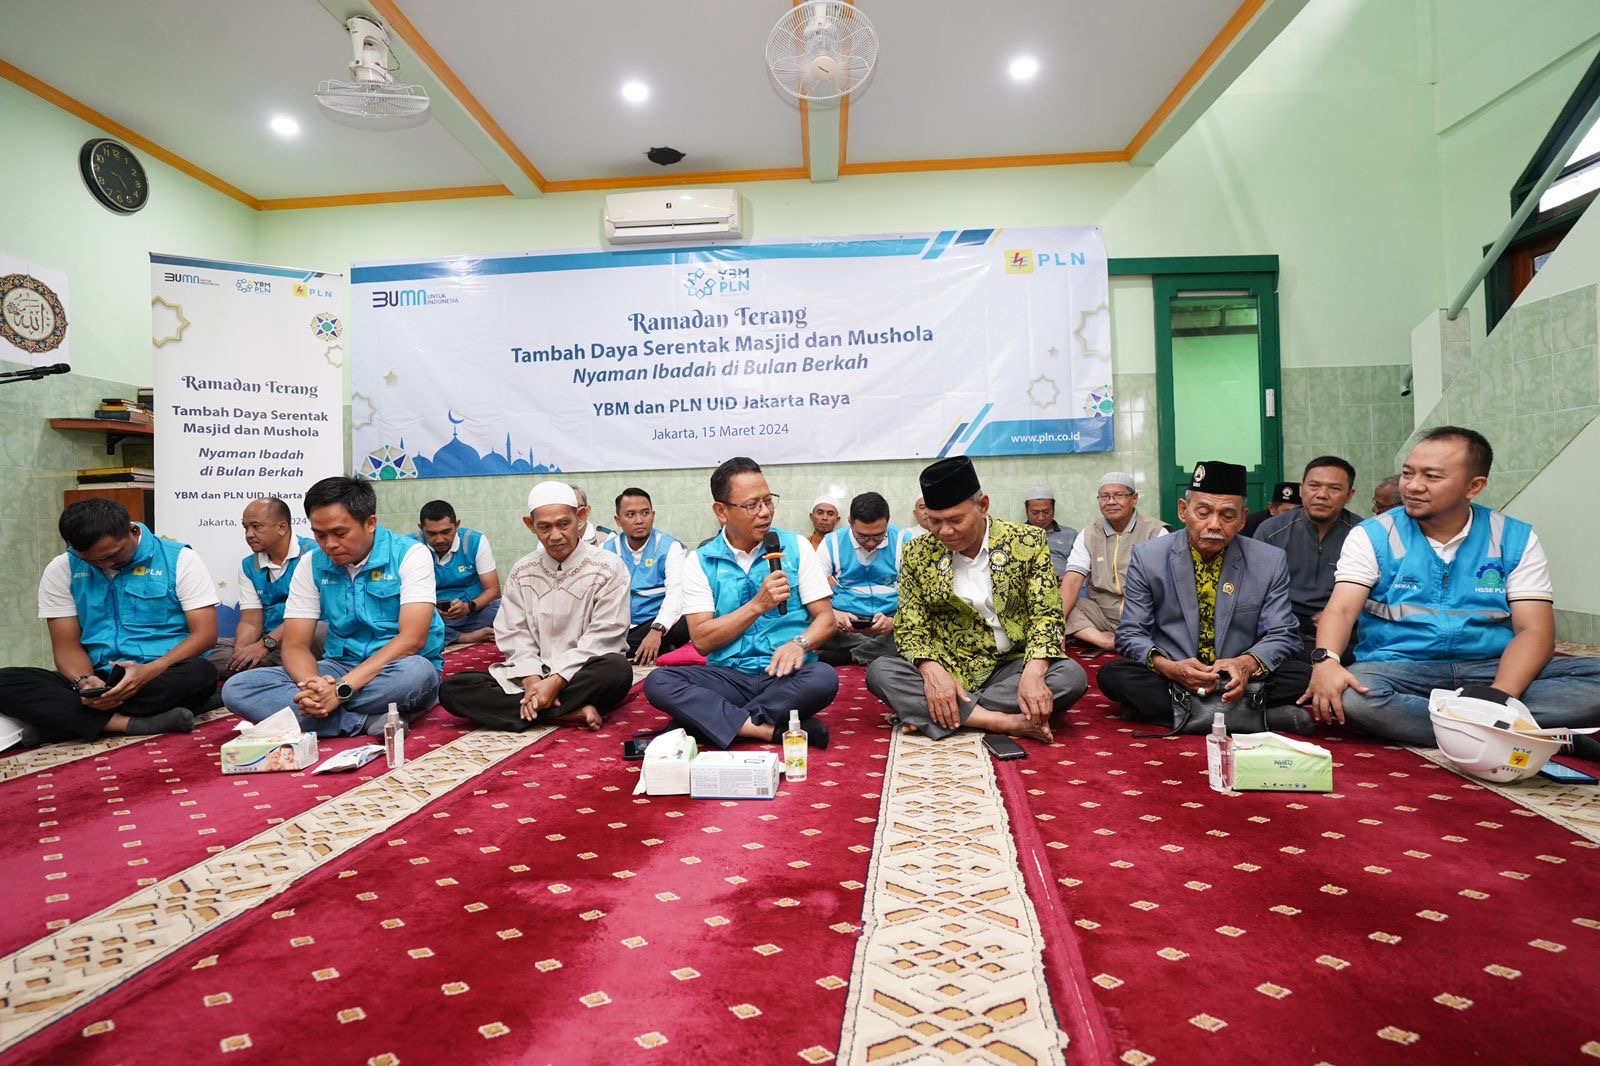 PLN Jakarta Raya Geber Ramadan Terang, Gratiskan Tambahan Daya Listrik 237 Masjid dan Mushola